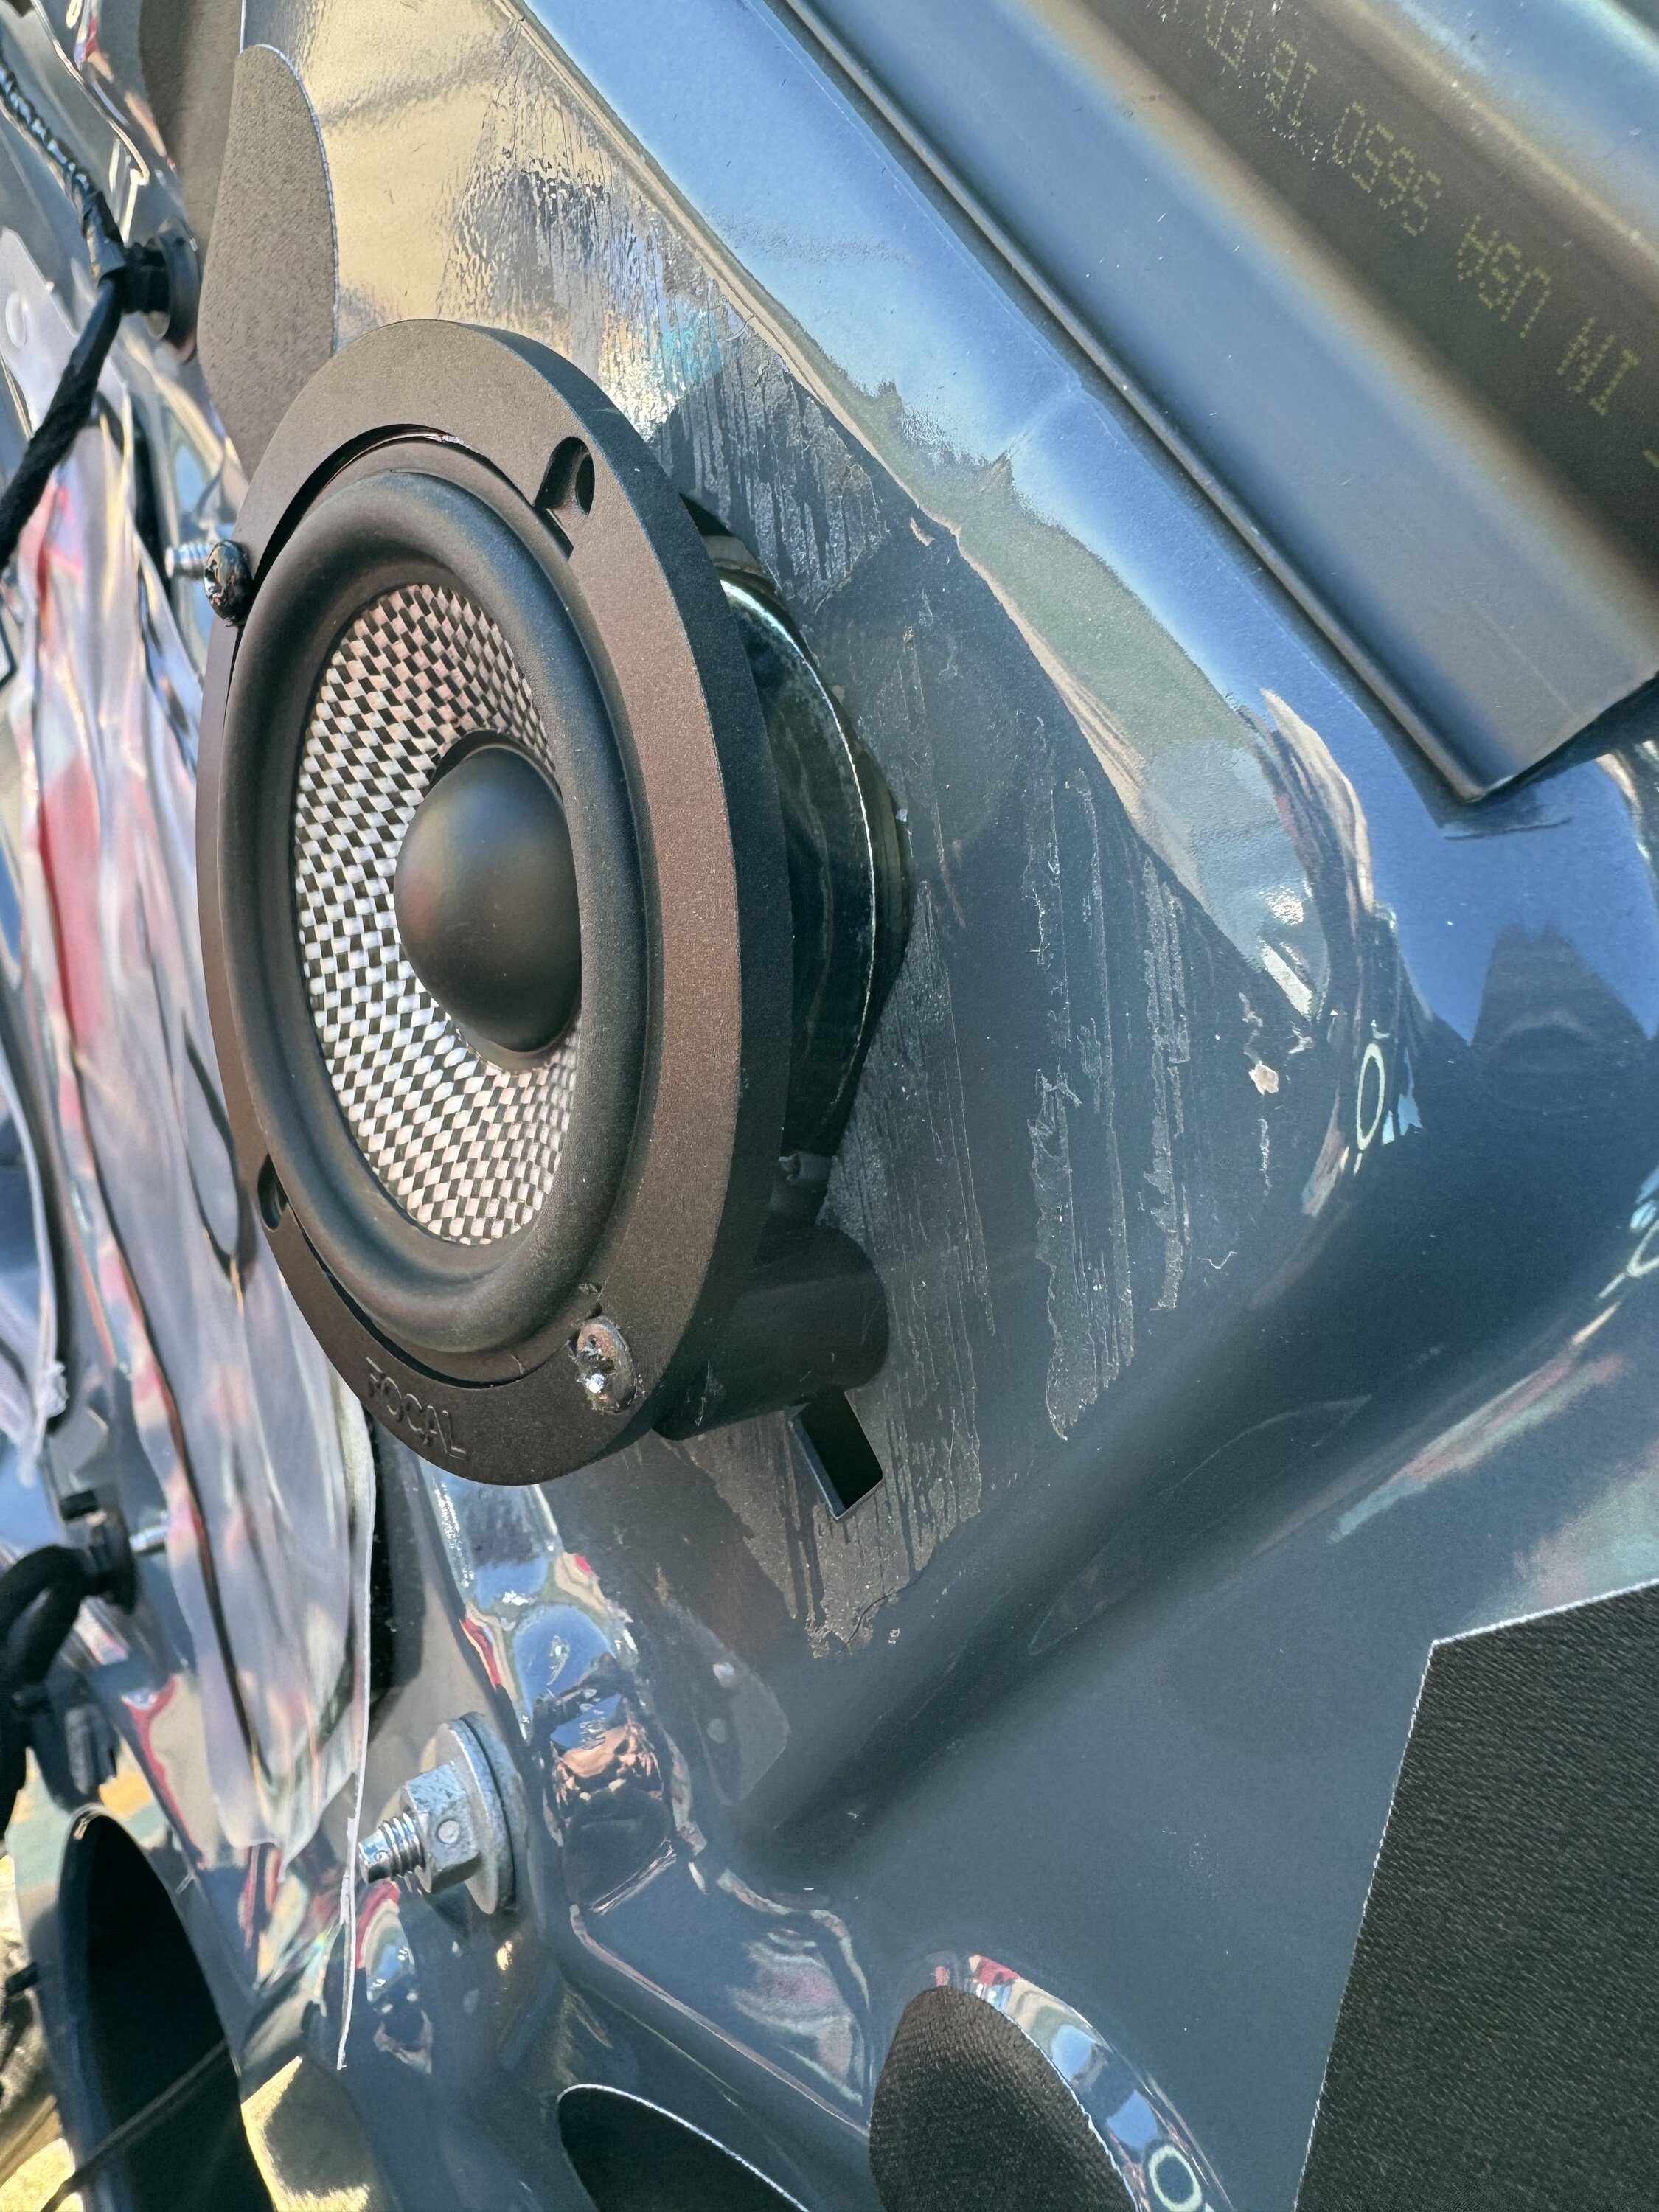 S650 Mustang Removed Door Panels for Speaker Upgrade - DIY Writeup IMG_0615